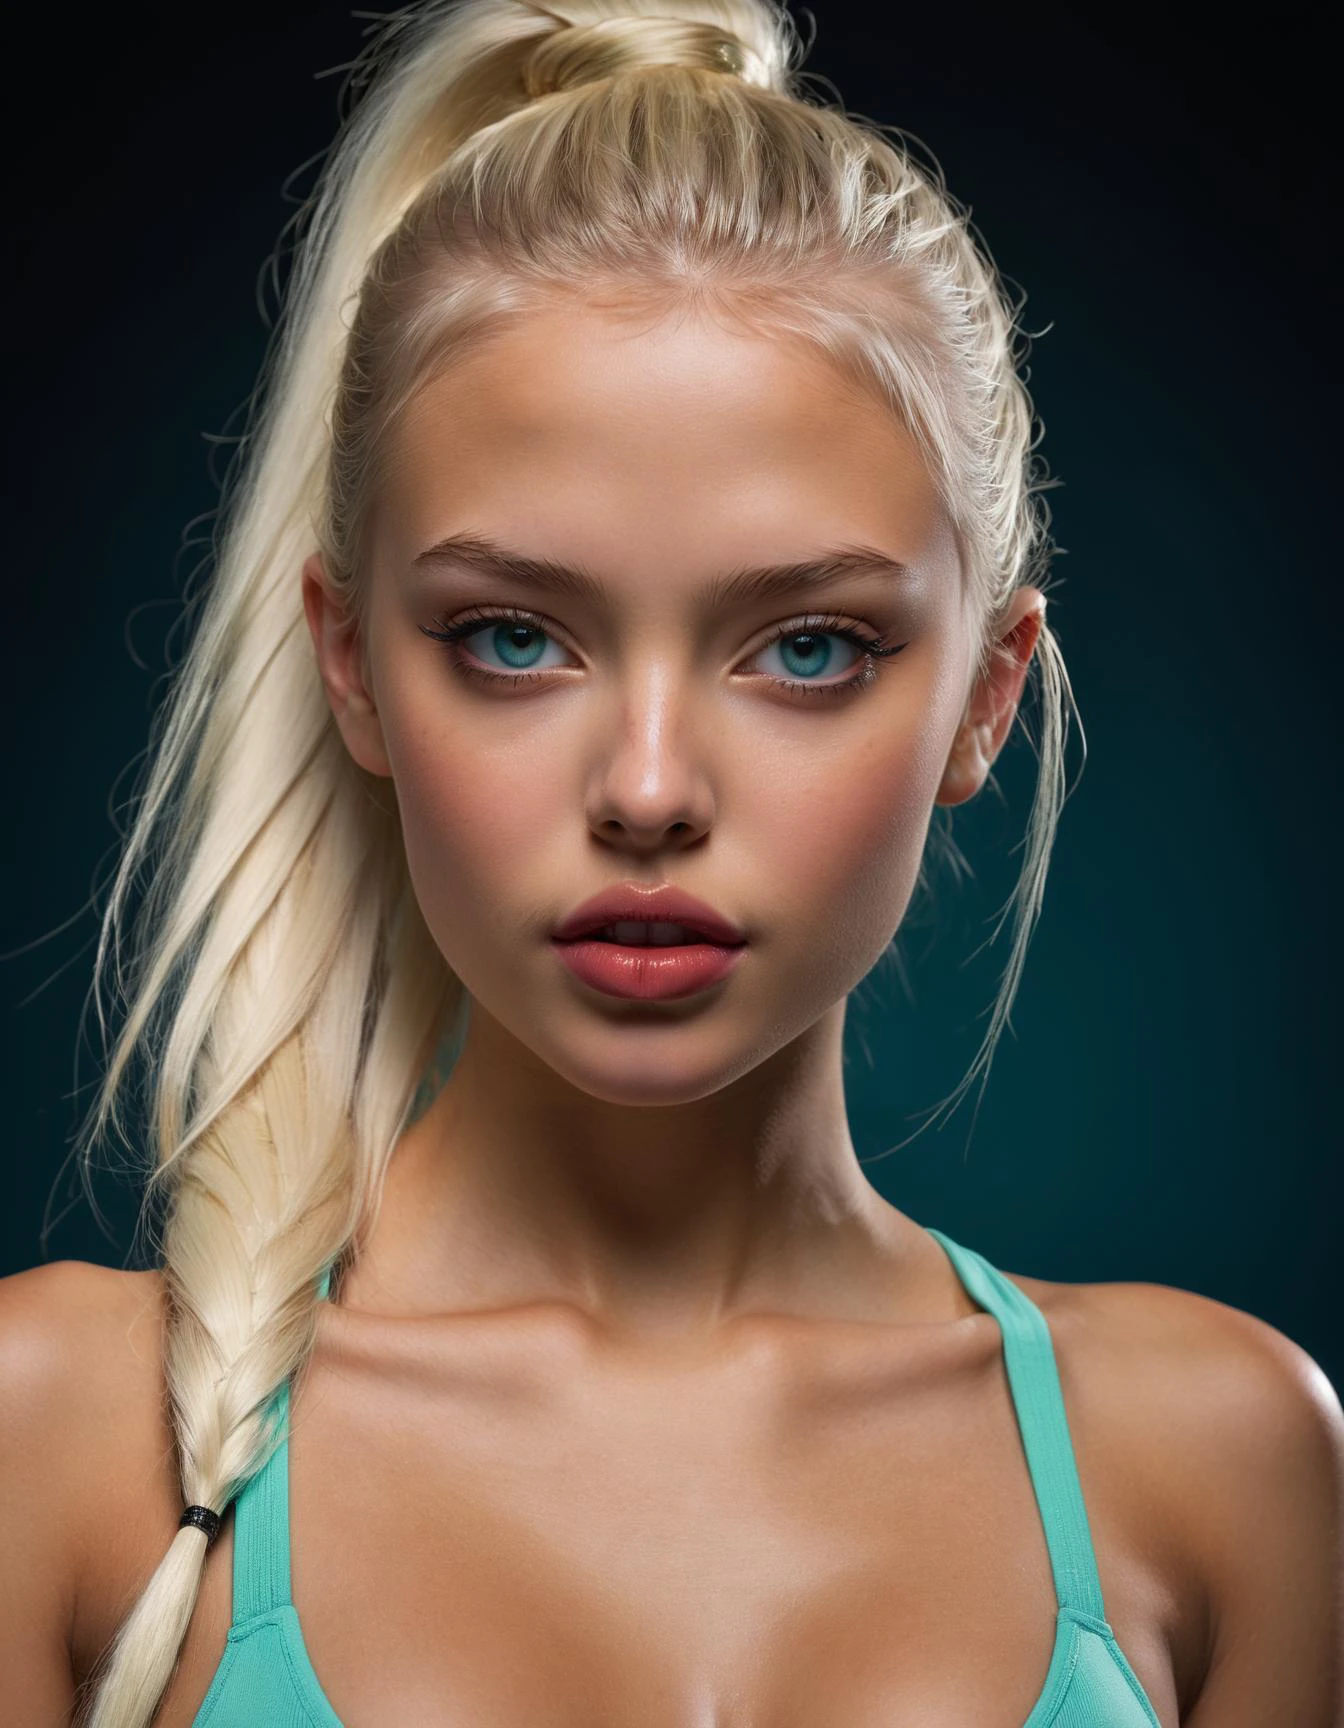 德國18歲素模特兒,  完美的運動身材, 挺拔的乳房 , 極其真實細緻的肌膚紋理, 極度清晰細緻的眼睛, 有光澤的口紅, 丰满的嘴唇, 可愛無瑕的小鼻子, 直白髮, 馬尾辮 , 青色眼睛顏色, 美丽的脸庞特征,
專業攝影：Bunny Yeager 和 Tatiana Ivanova ,  (感性的 , 誘人的 , 高超的:1.4), 極其逼真的攝影, 粗线条, 超詳細, 富有表现力,  得獎,  (風景:1.4), (錯綜複雜 details, 傑作, 最好的品質:1.4),
看著觀眾, 動態姿勢, 广角视图, 深色限量調色板, 重點照明 ,
ISO 300, 1/250秒, F/2,8, 38毫米, extremely 高品質 RAW photograph, 錯綜複雜, 精緻的細節和紋理, 非常詳細, 超精细摄影, 4k, 銳利的焦點, 高解析度, 8k超高清, 單眼相機, 高品質, 膠片顆粒, 富士XT3, 看著觀眾, 動態姿勢, 广角视图, 深色限量調色板, low 重點照明,
